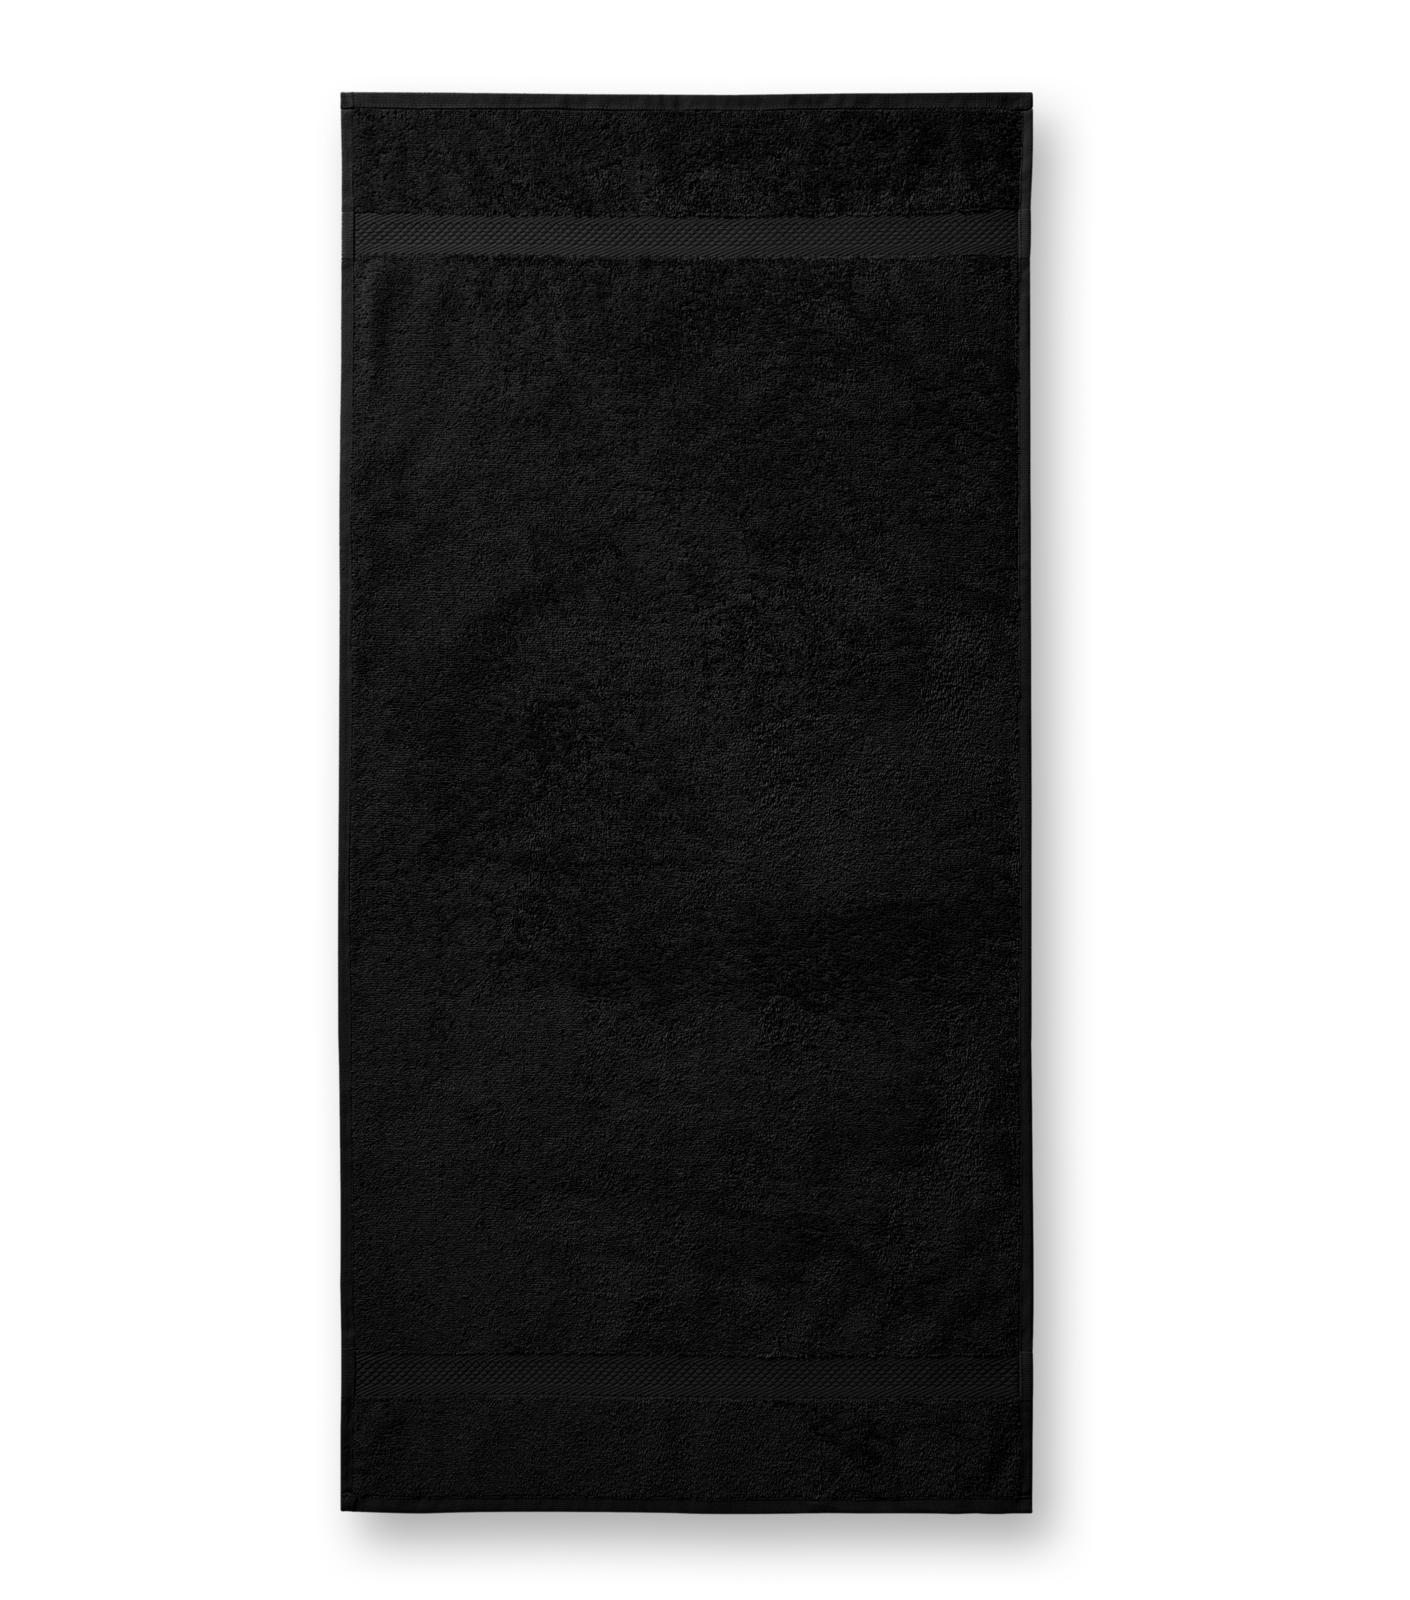 Terija cilpiņu auduma dvielis. Izmēr 50 x 100 cm. Melnā krāsā ar bodņu abos galos.